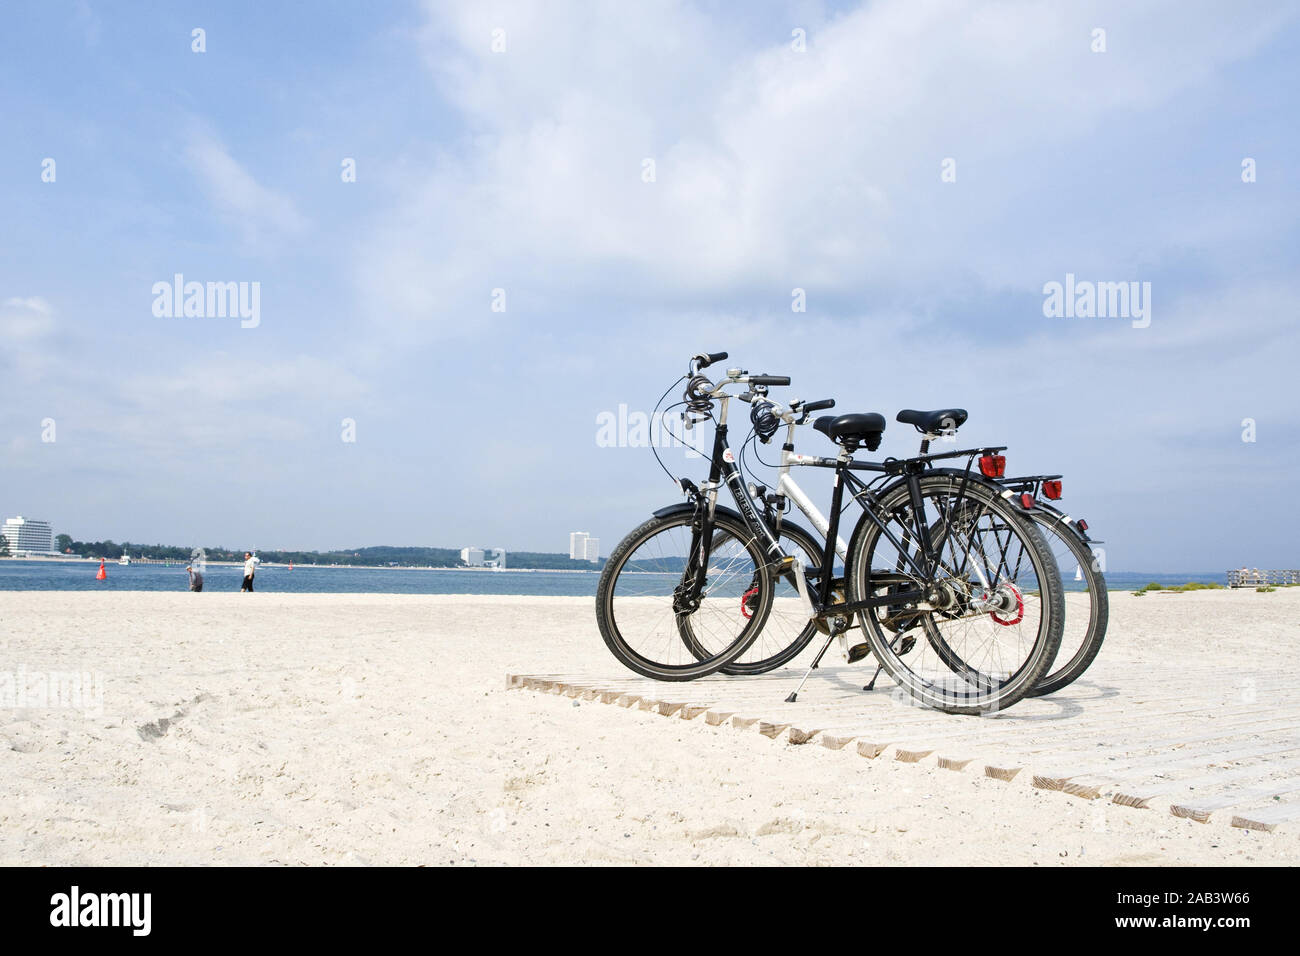 Zwei abgestellte Fahrraeder am Strand Stock Photo